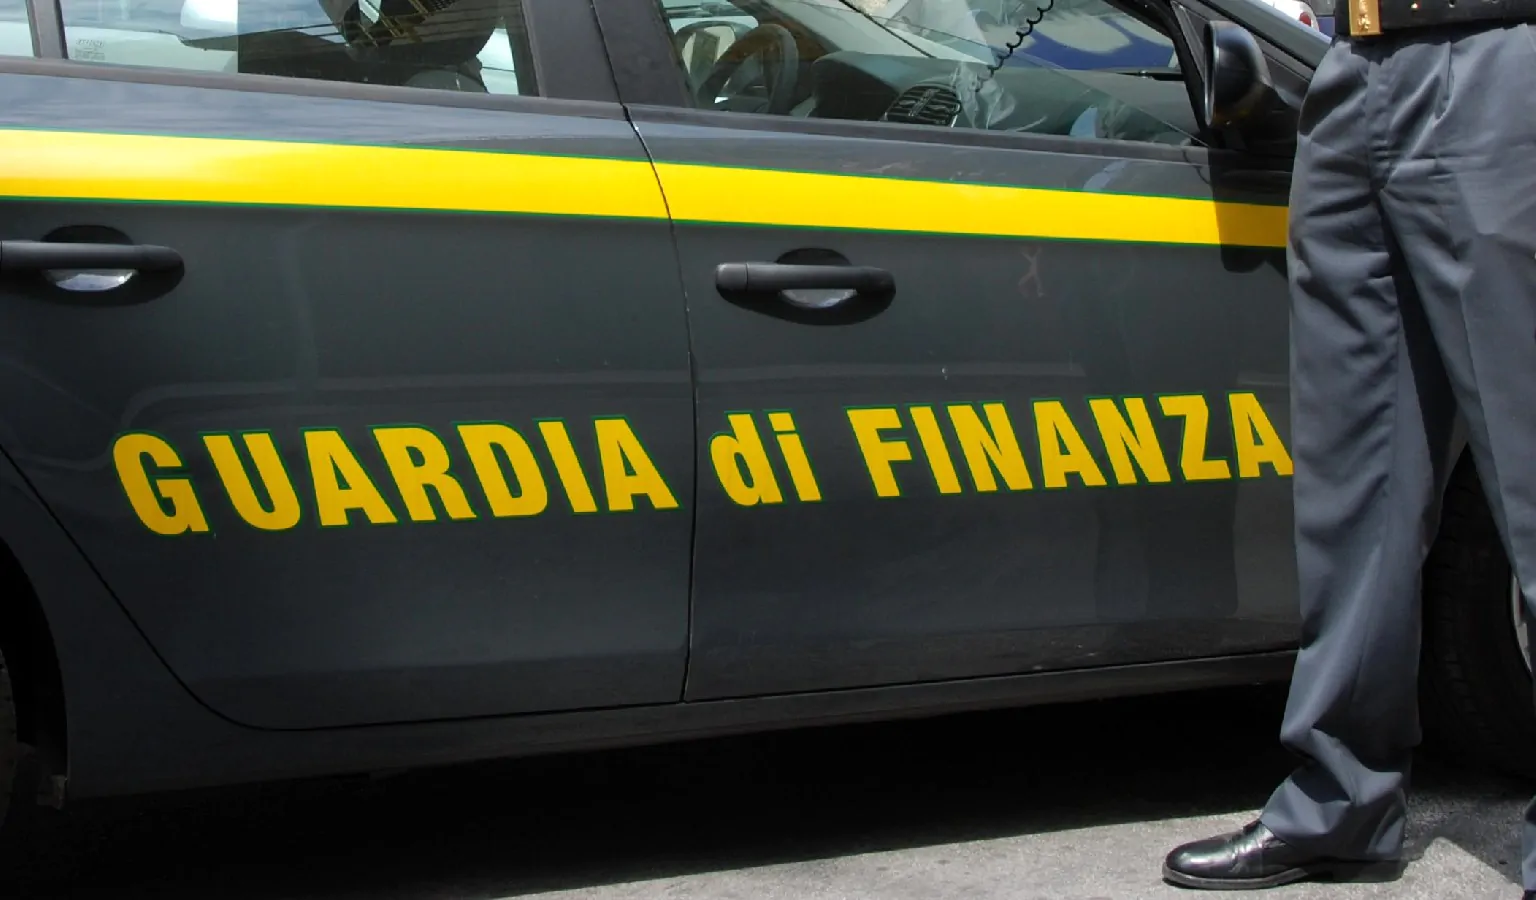 'Ndrangheta, confiscati 84 milioni alle cosche Morabito ed Aquino